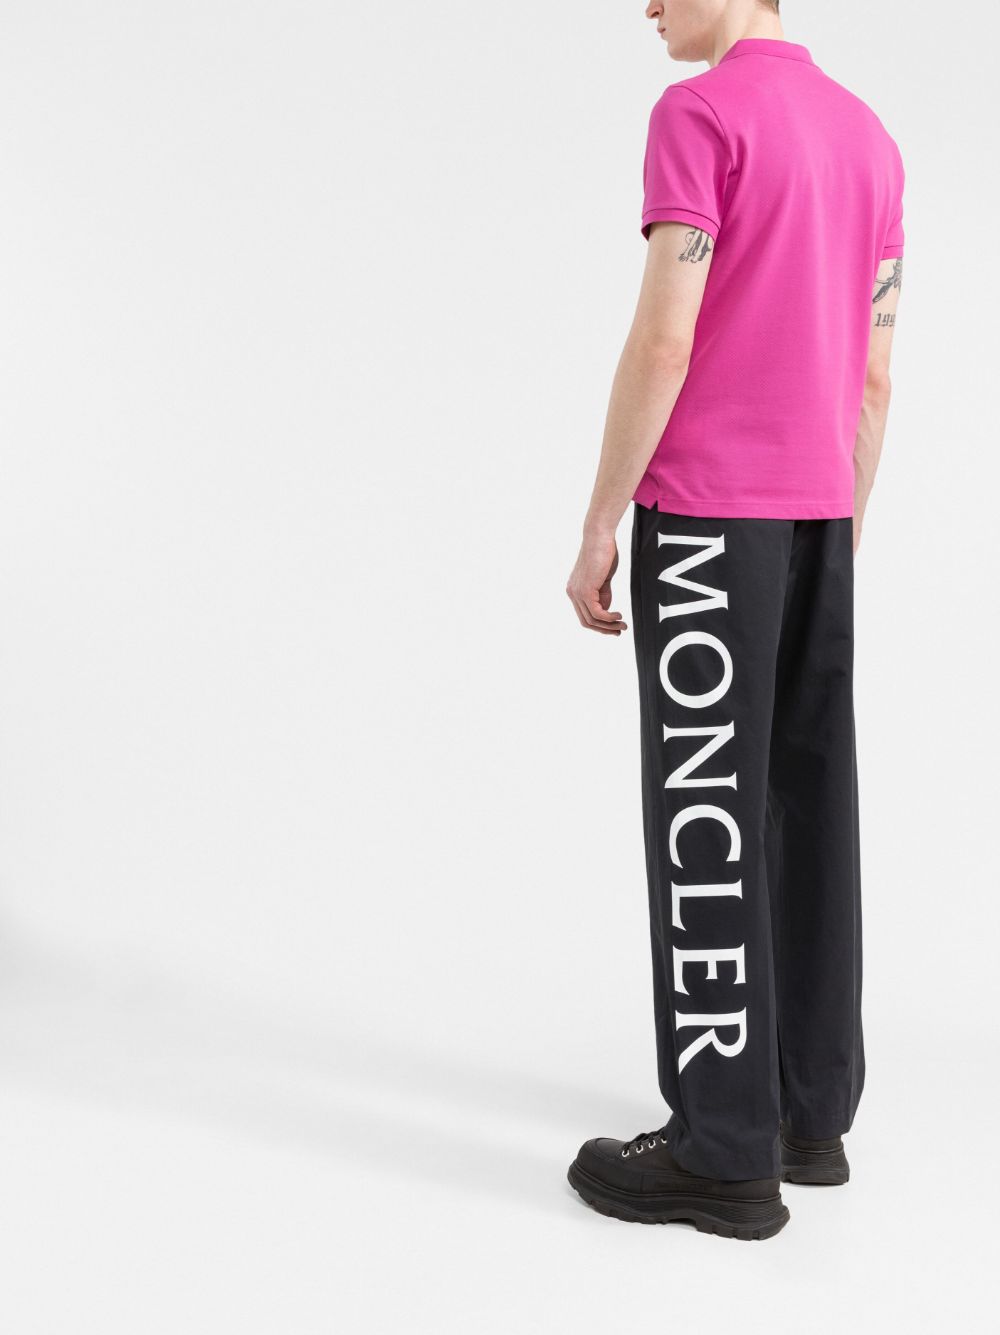 MONCLER Technical Fabric Pants Black - MAISONDEFASHION.COM